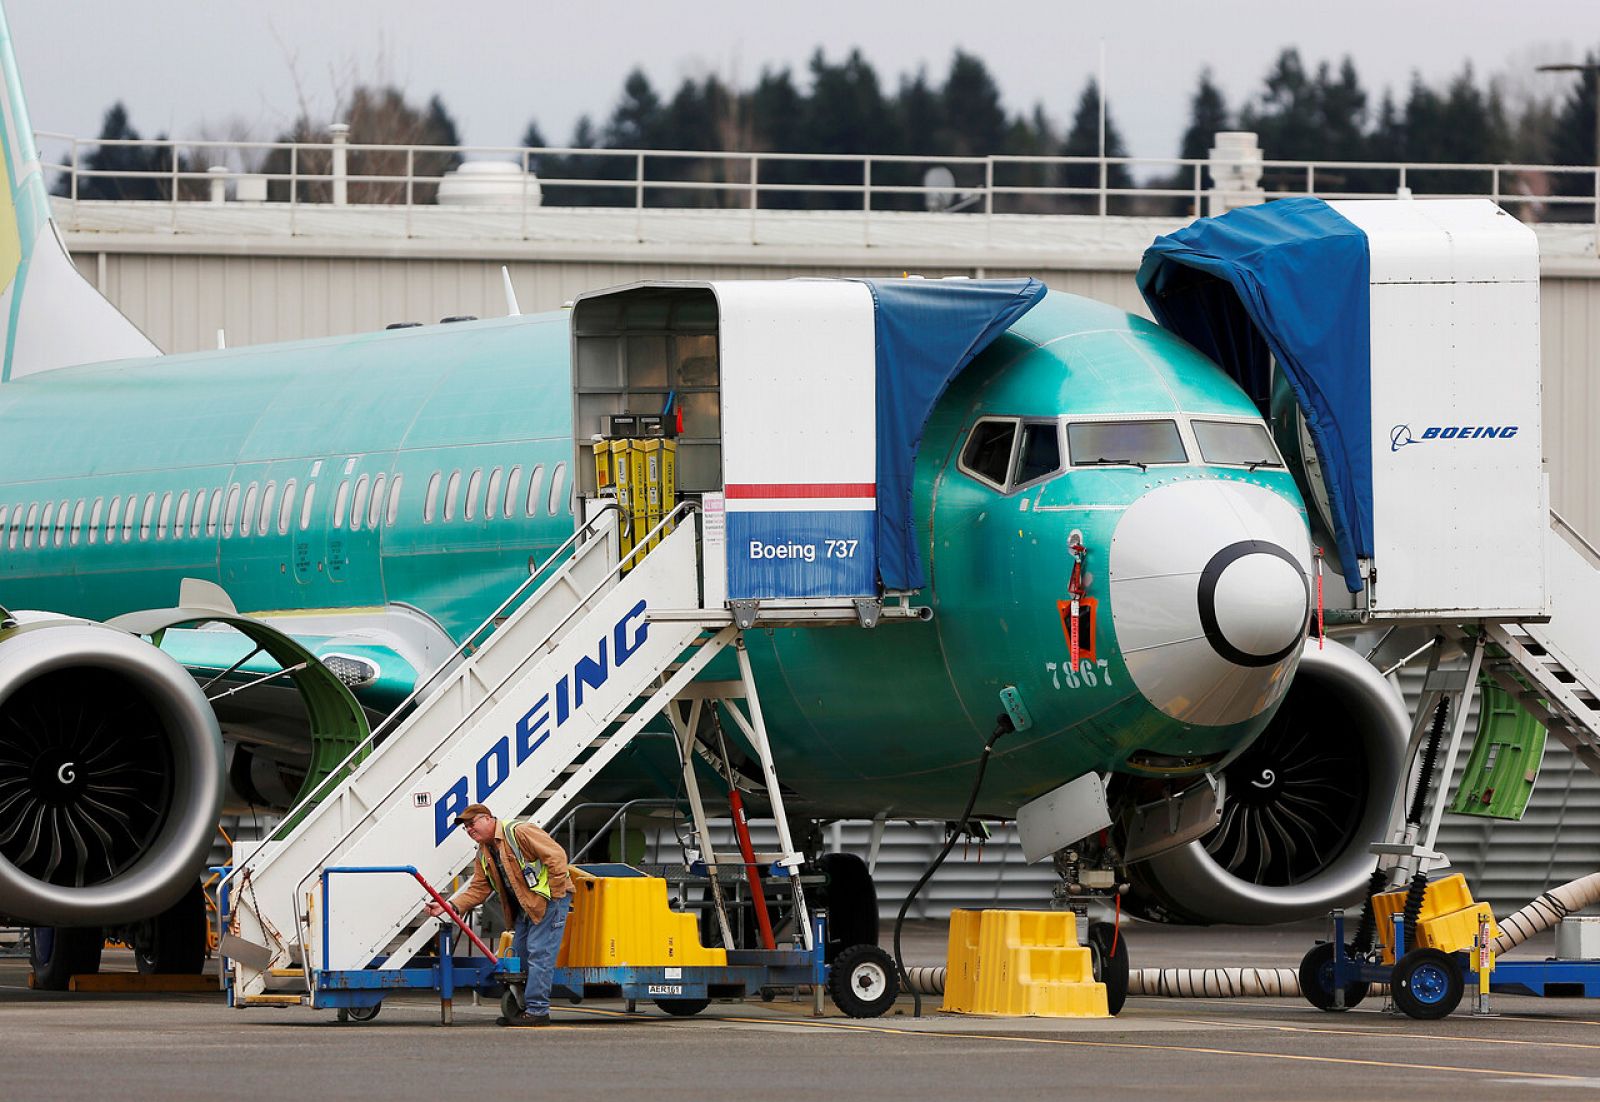 El vuelo del avión con modelo Boeing 737 - MAX está prohibido en todo el mundo de manera indefinida